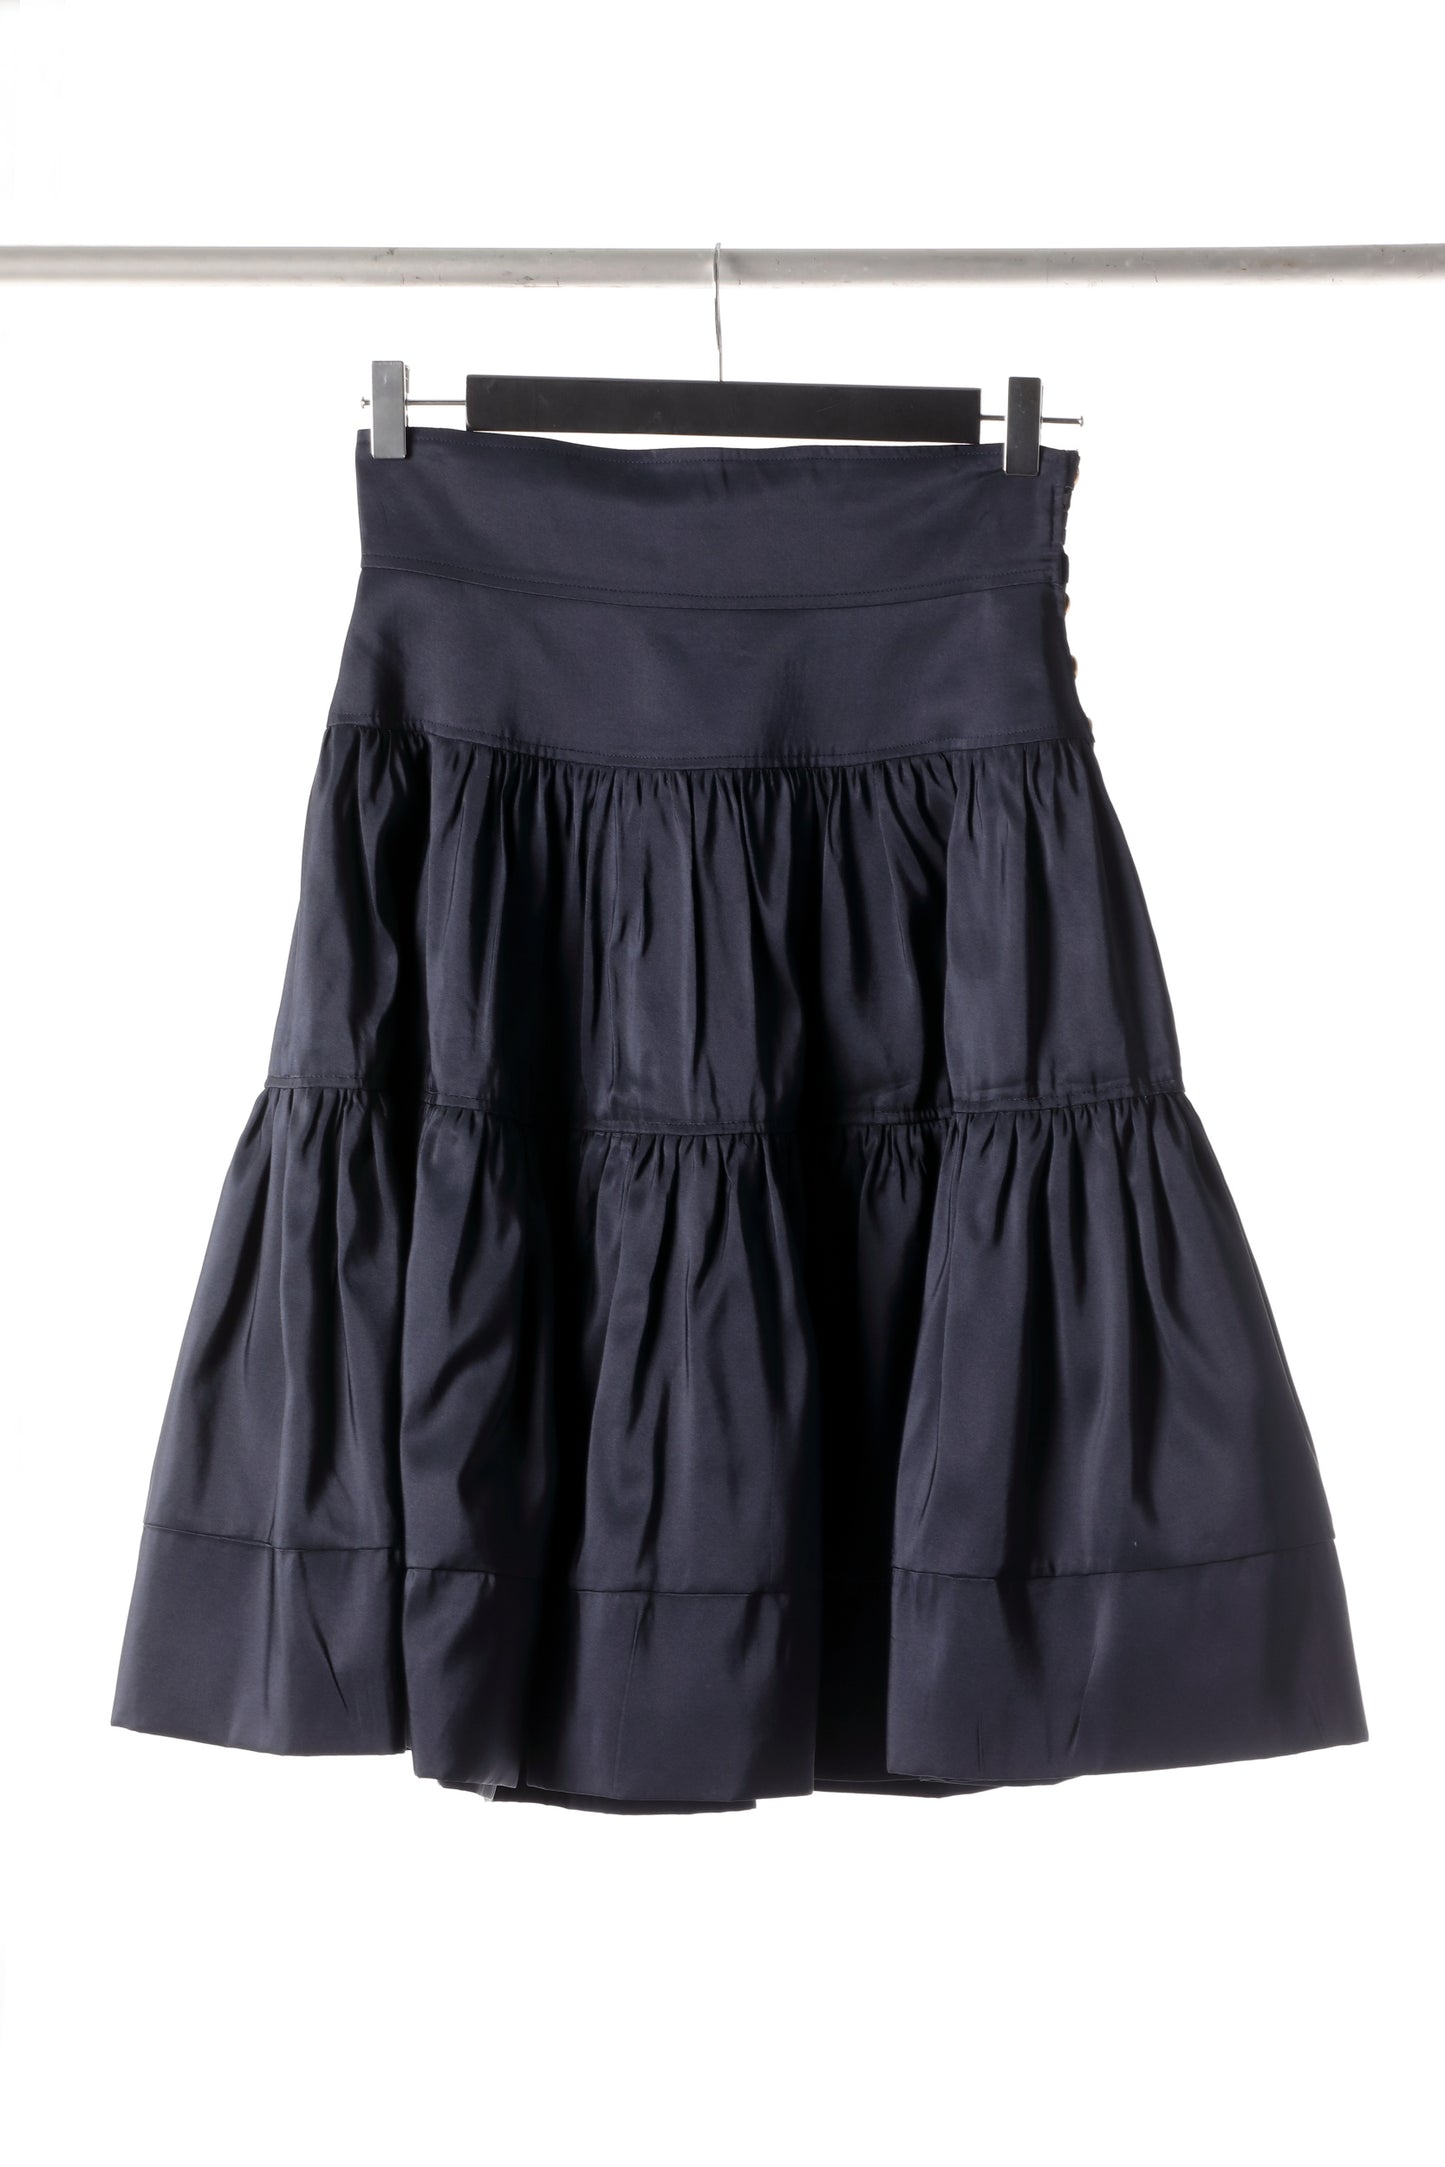 Chanel 80s skirt